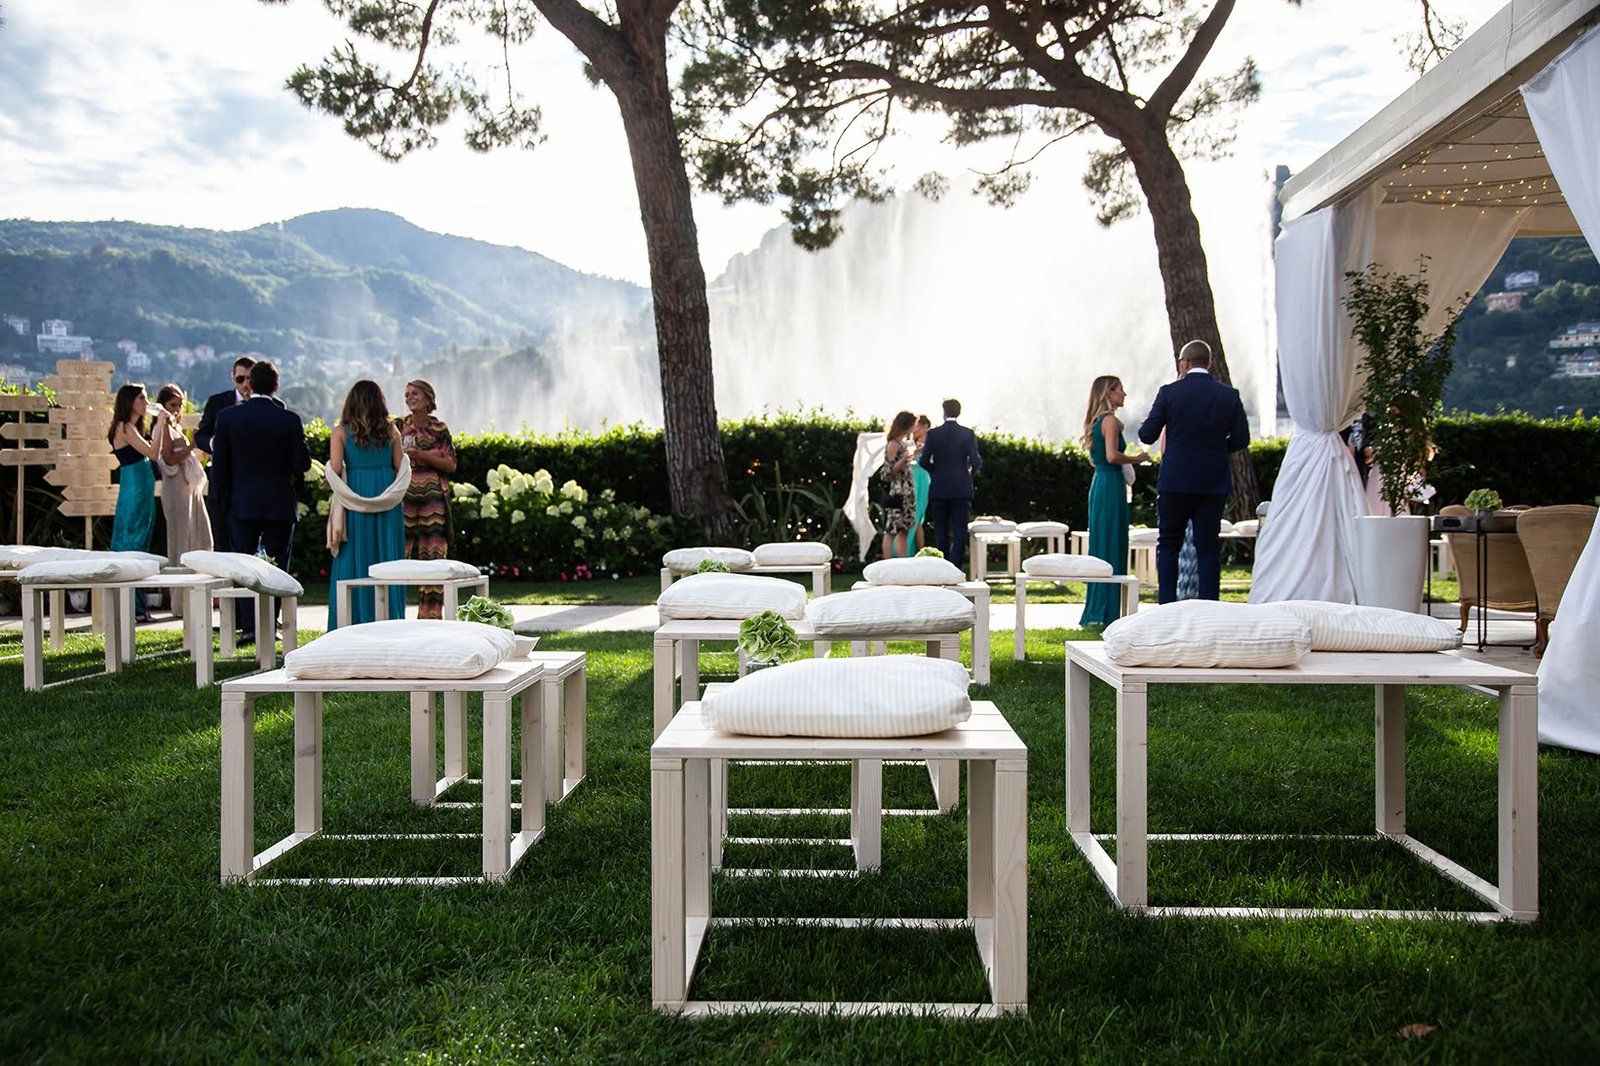 A beautiful wedding at Villa Geno